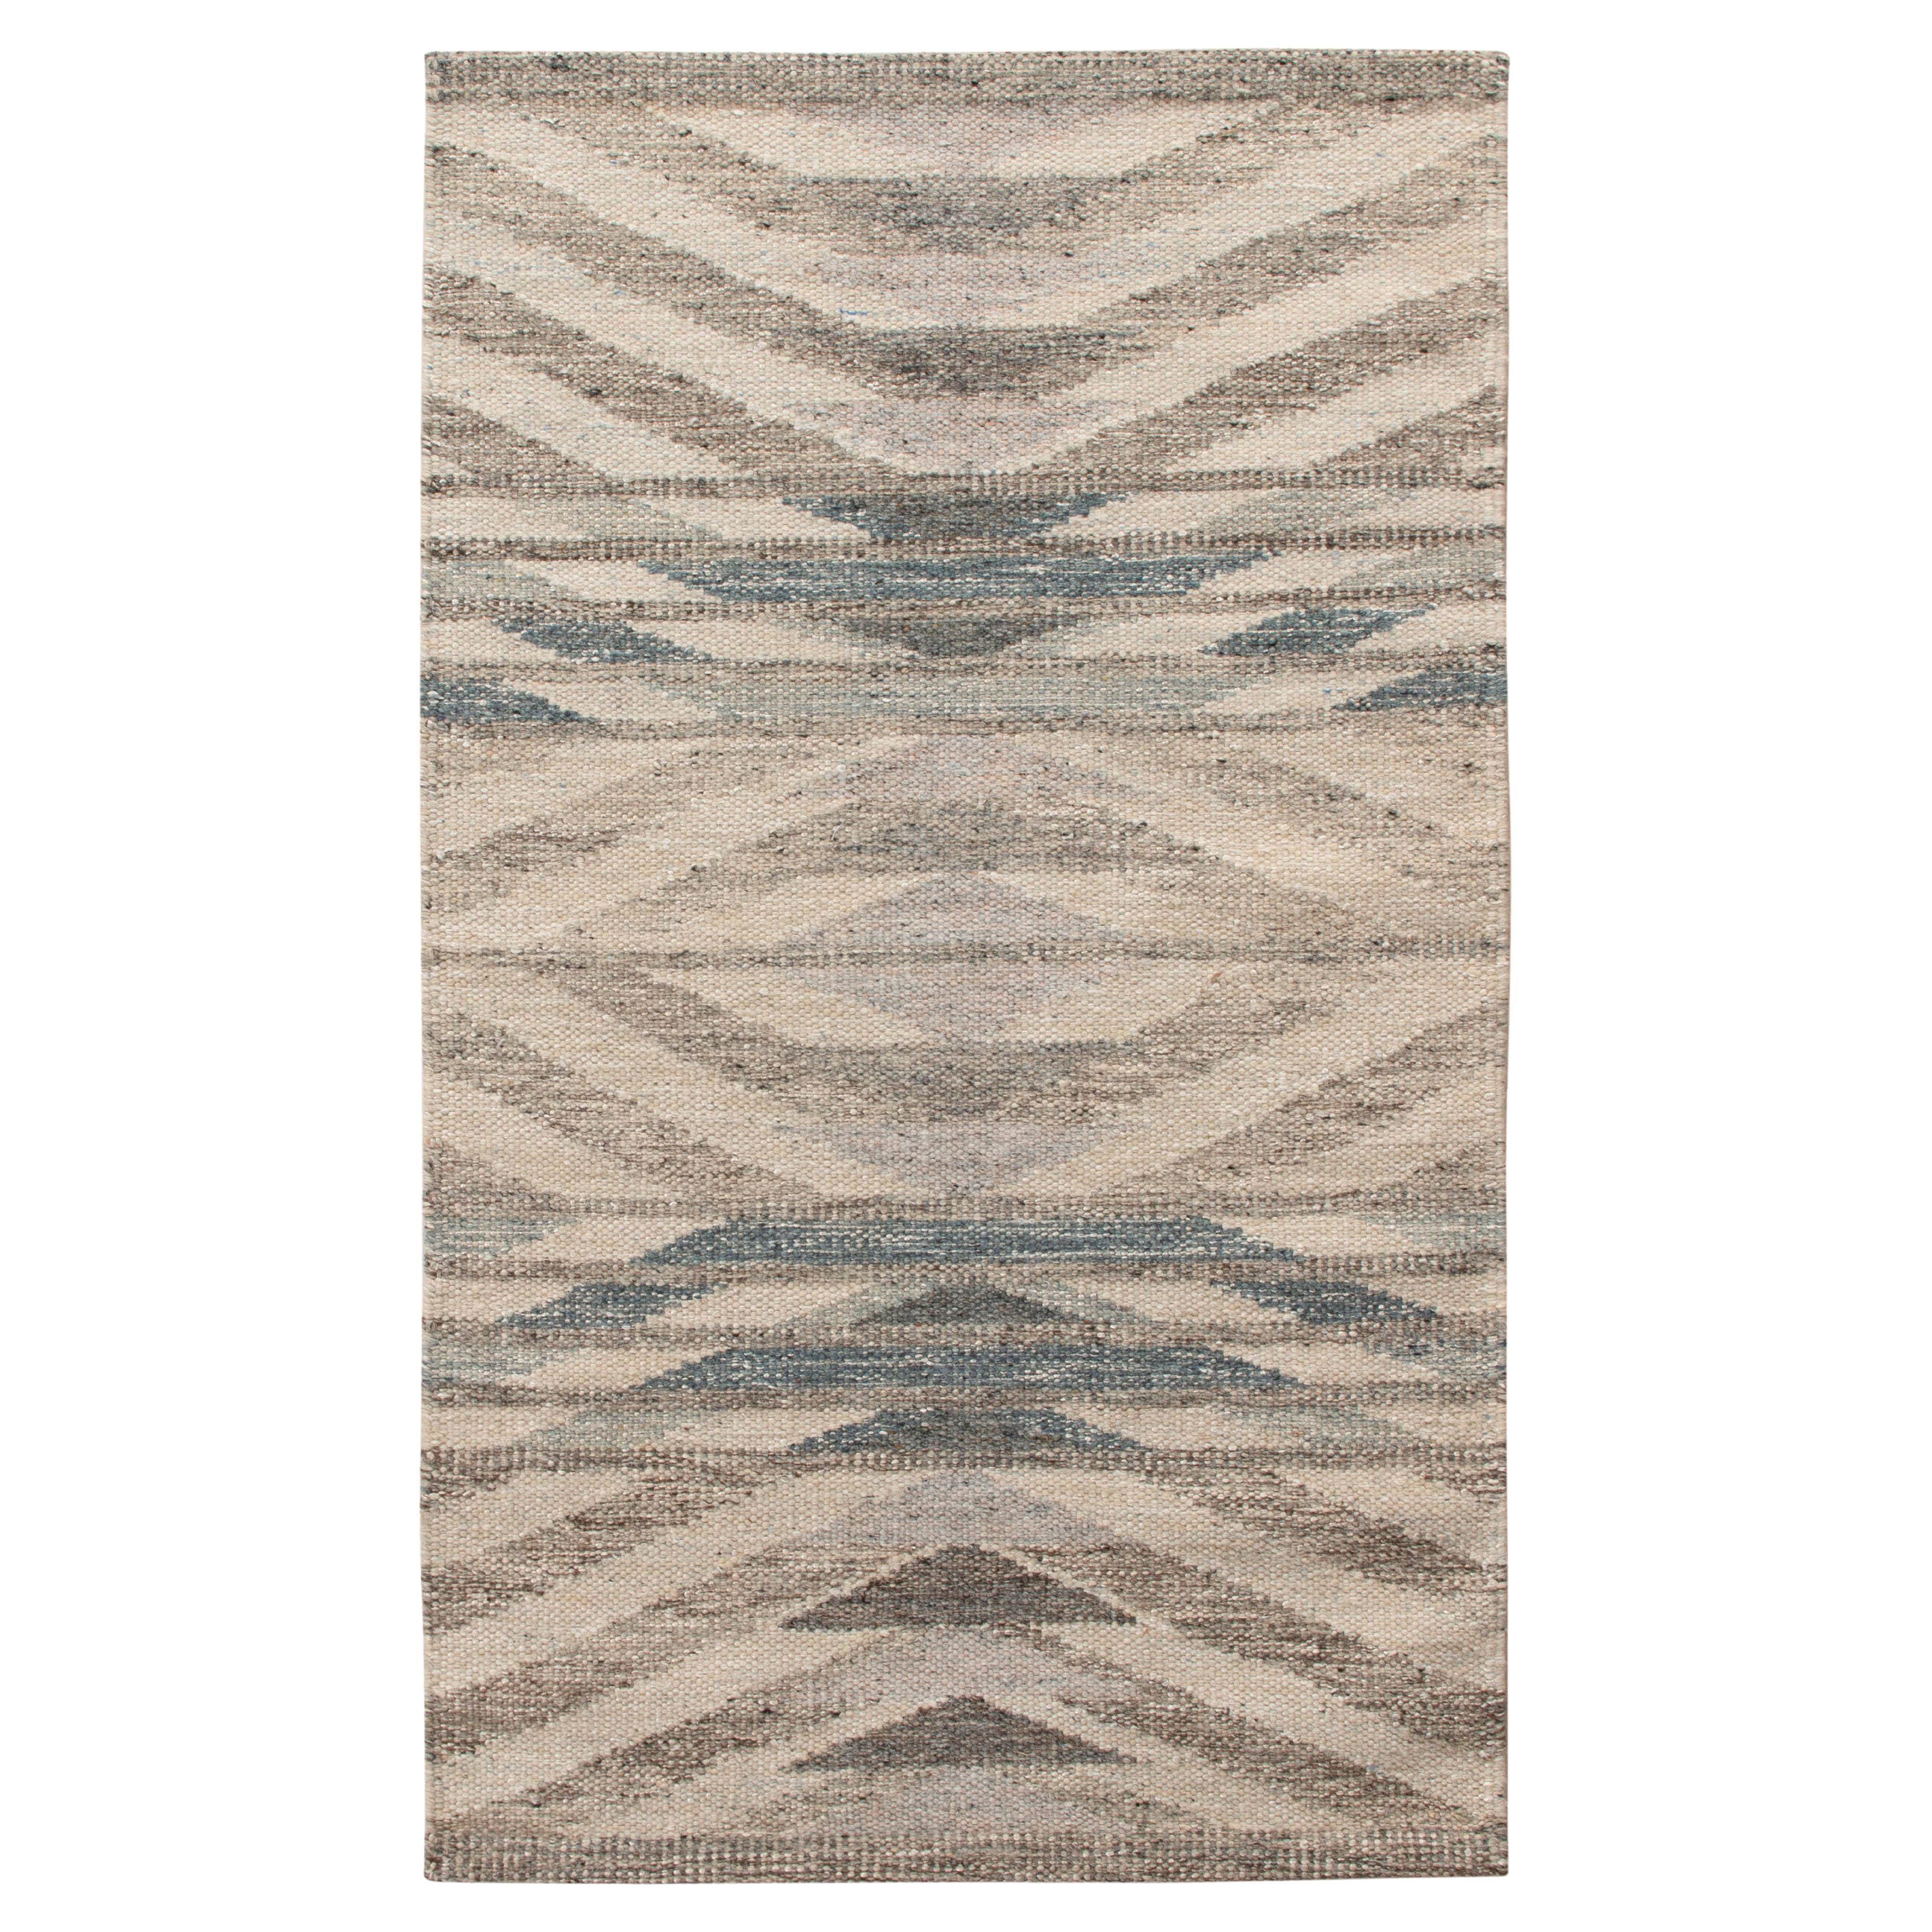 Teppich & Kelim-Teppich im skandinavischen Stil in Beige, Grau mit geometrischem Muster